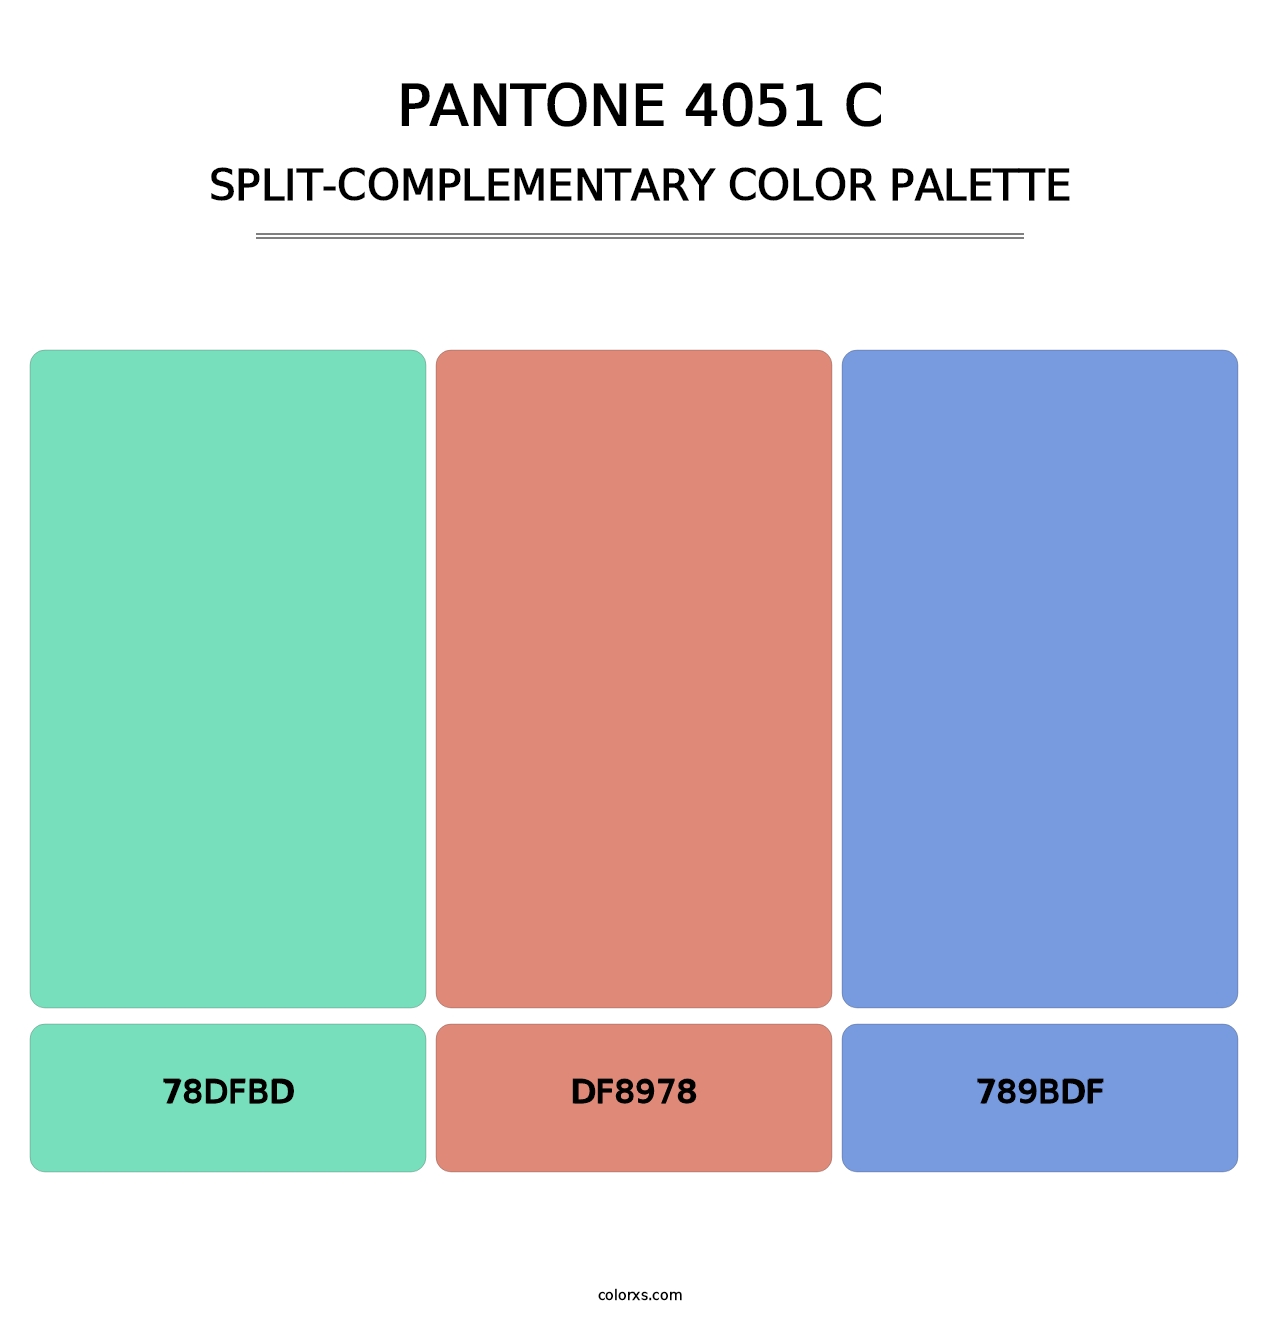 PANTONE 4051 C - Split-Complementary Color Palette